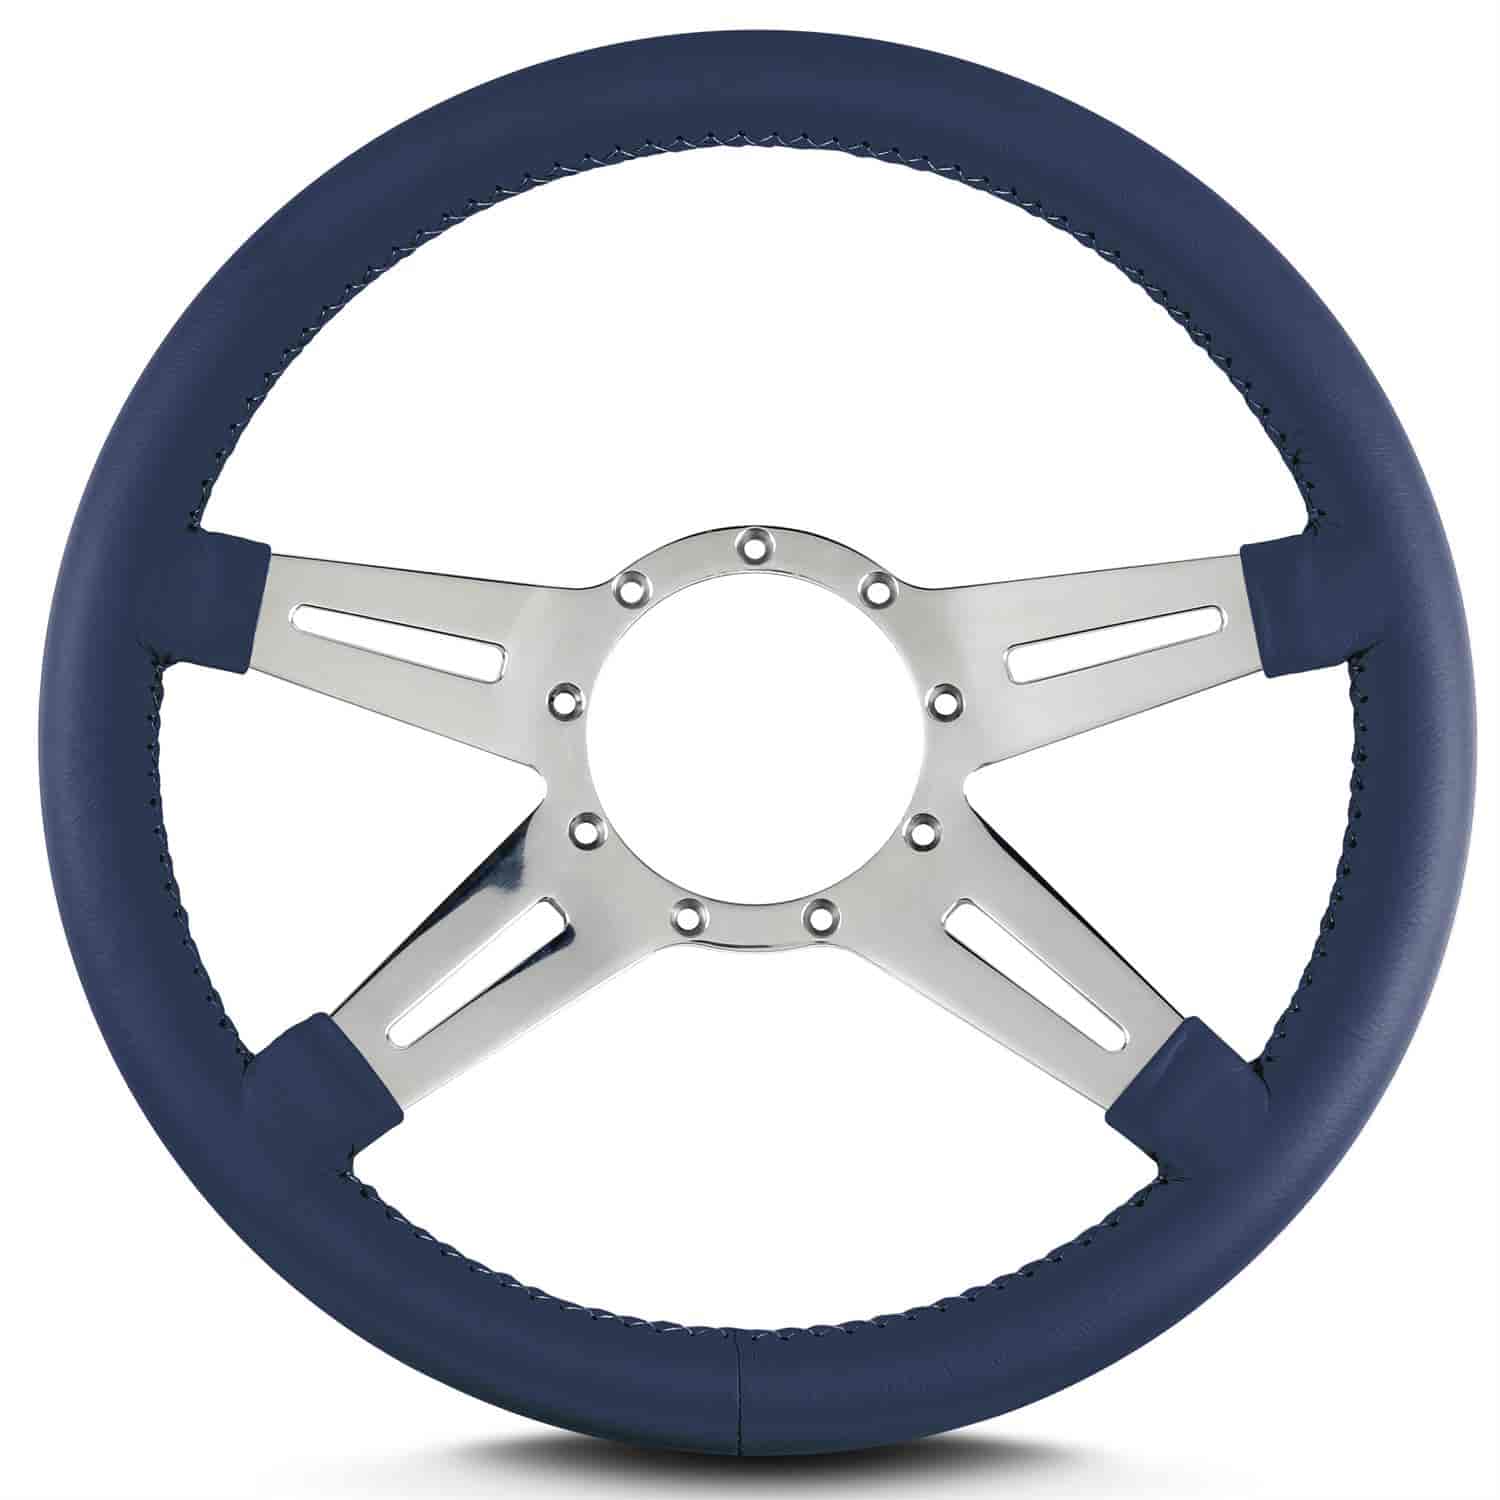 MK-9 Steering Wheel 14" Diameter